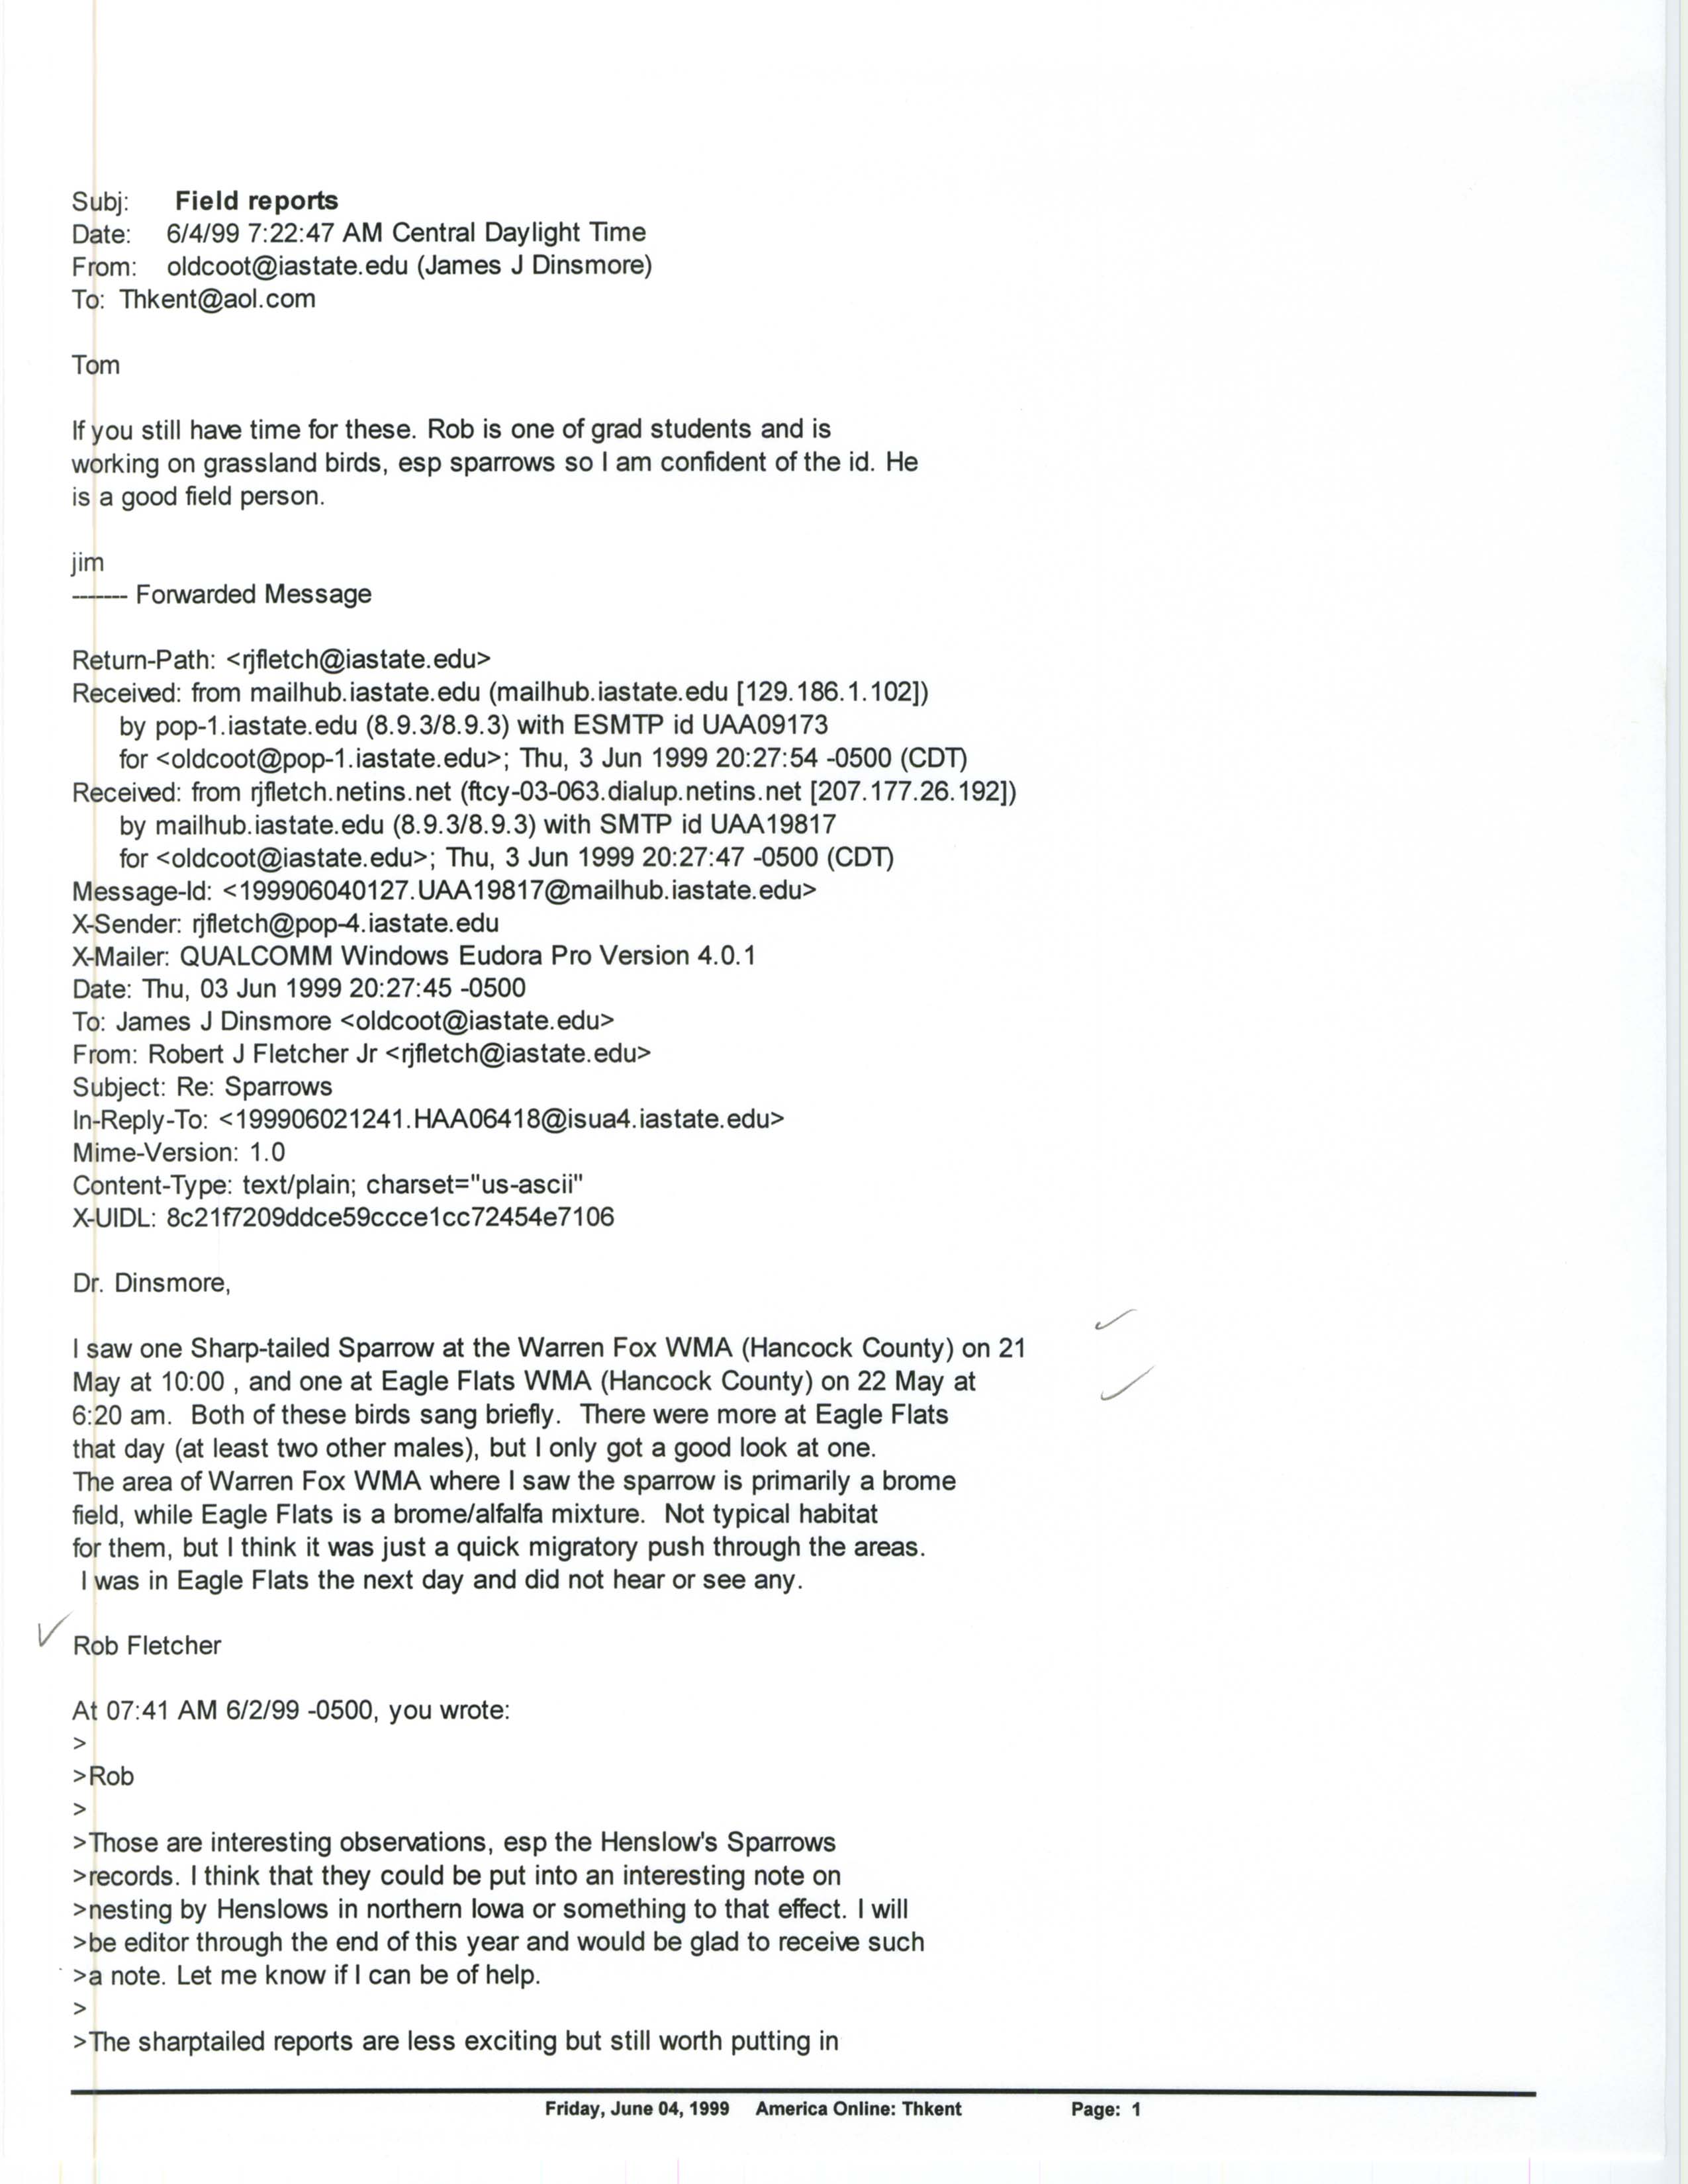 Jim Dinsmore email to Thomas Kent regarding Sparrows, June 4, 1999